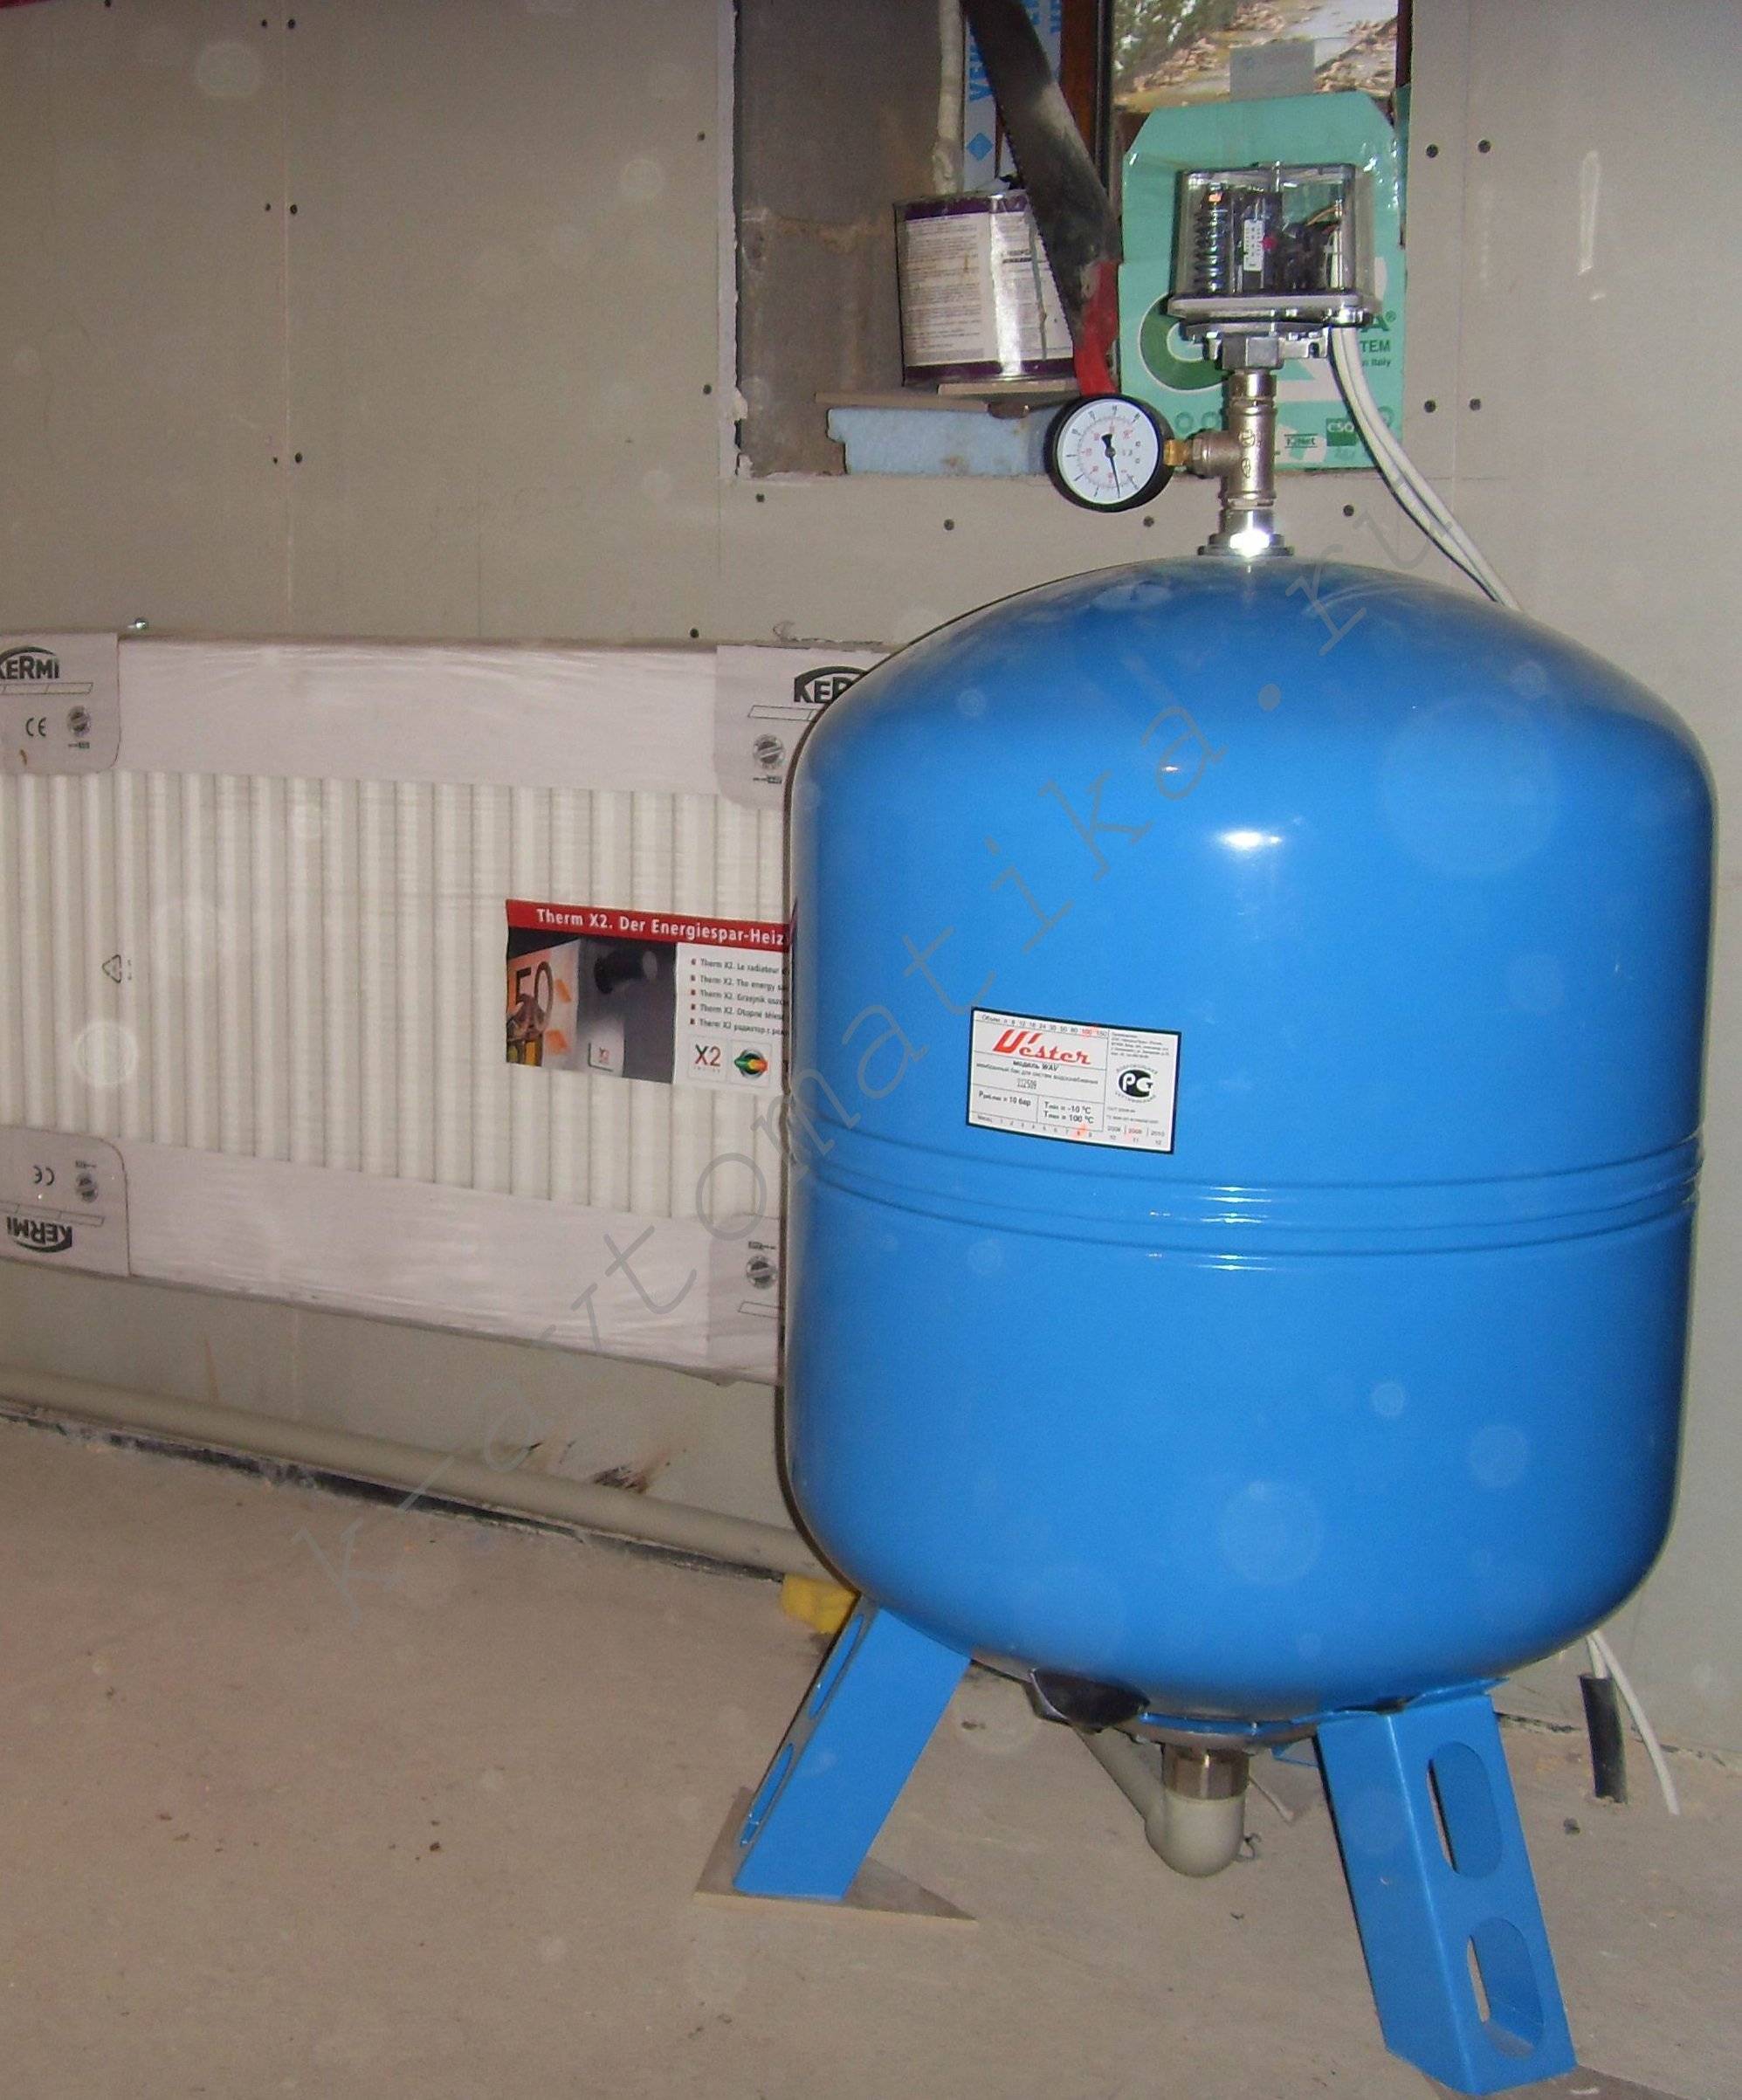 Гидроаккумулятор для систем водоснабжения: устройство, функции, схемы подключения